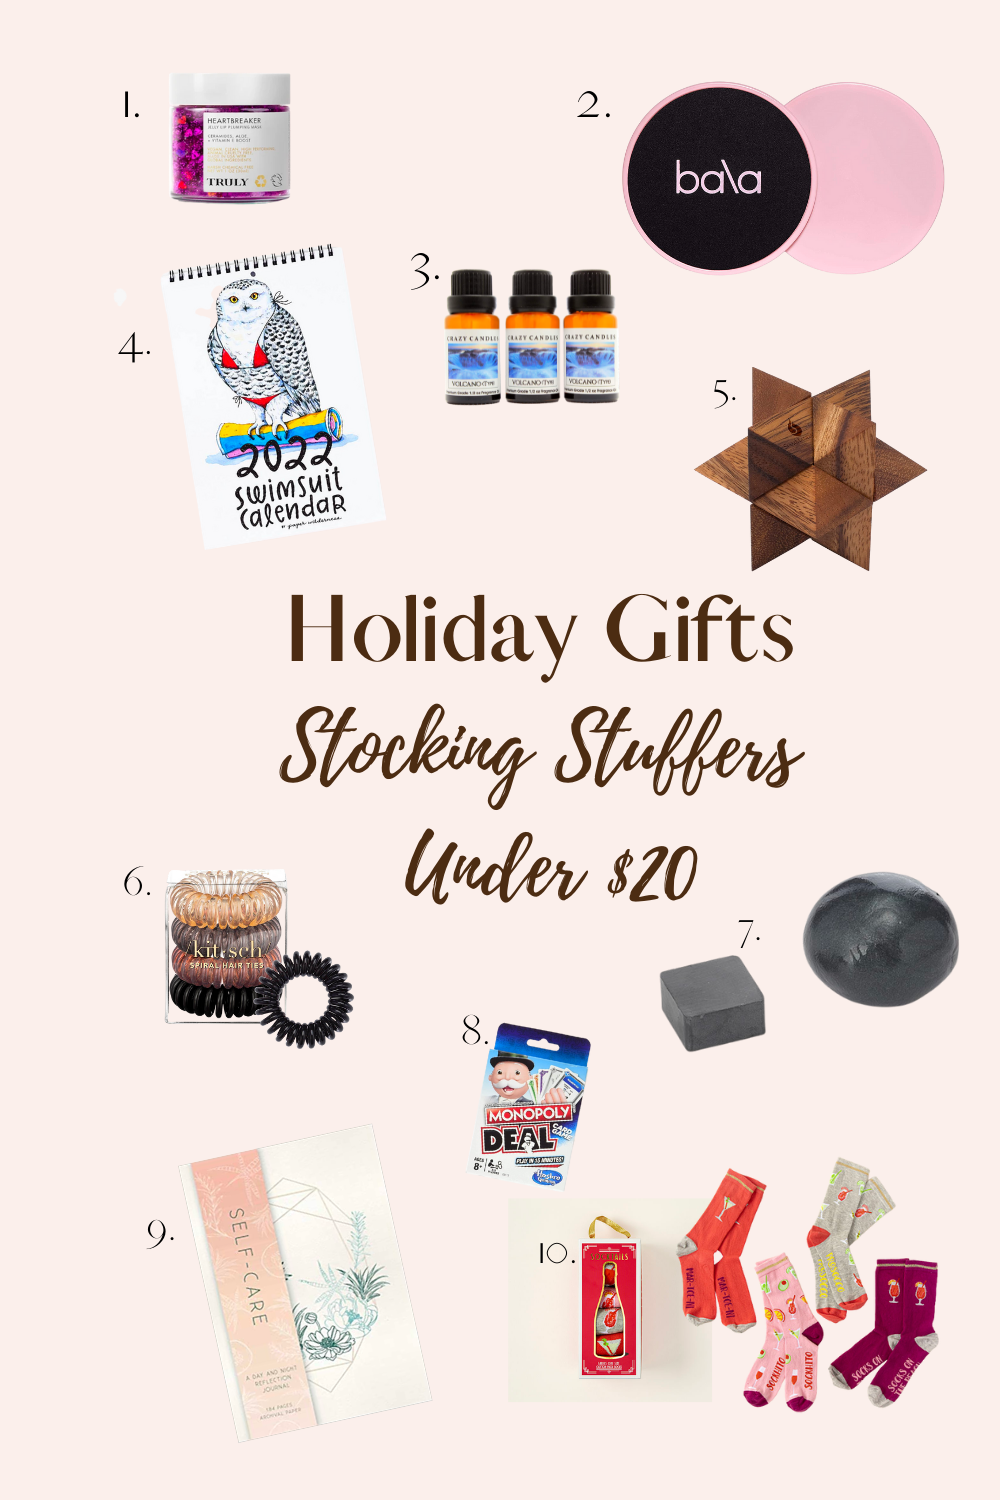 5 unique stocking stuffers under $20